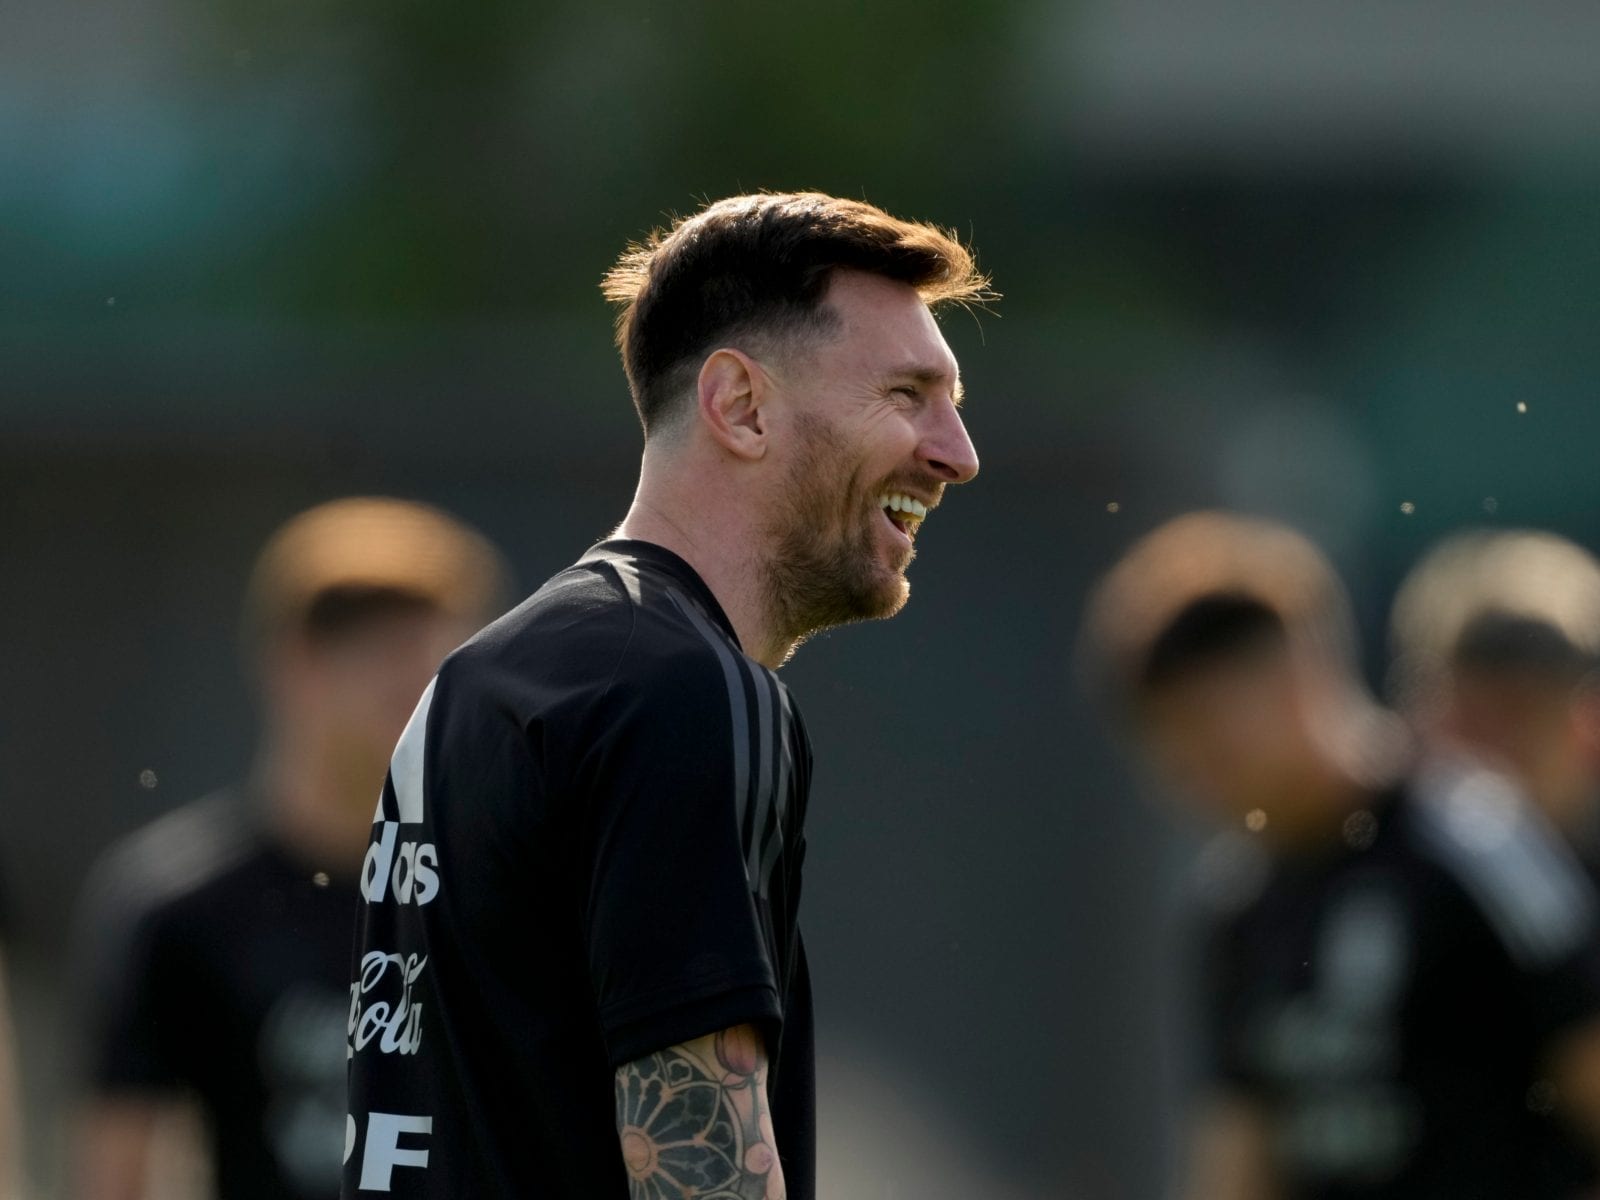 Messi in focus at Lens